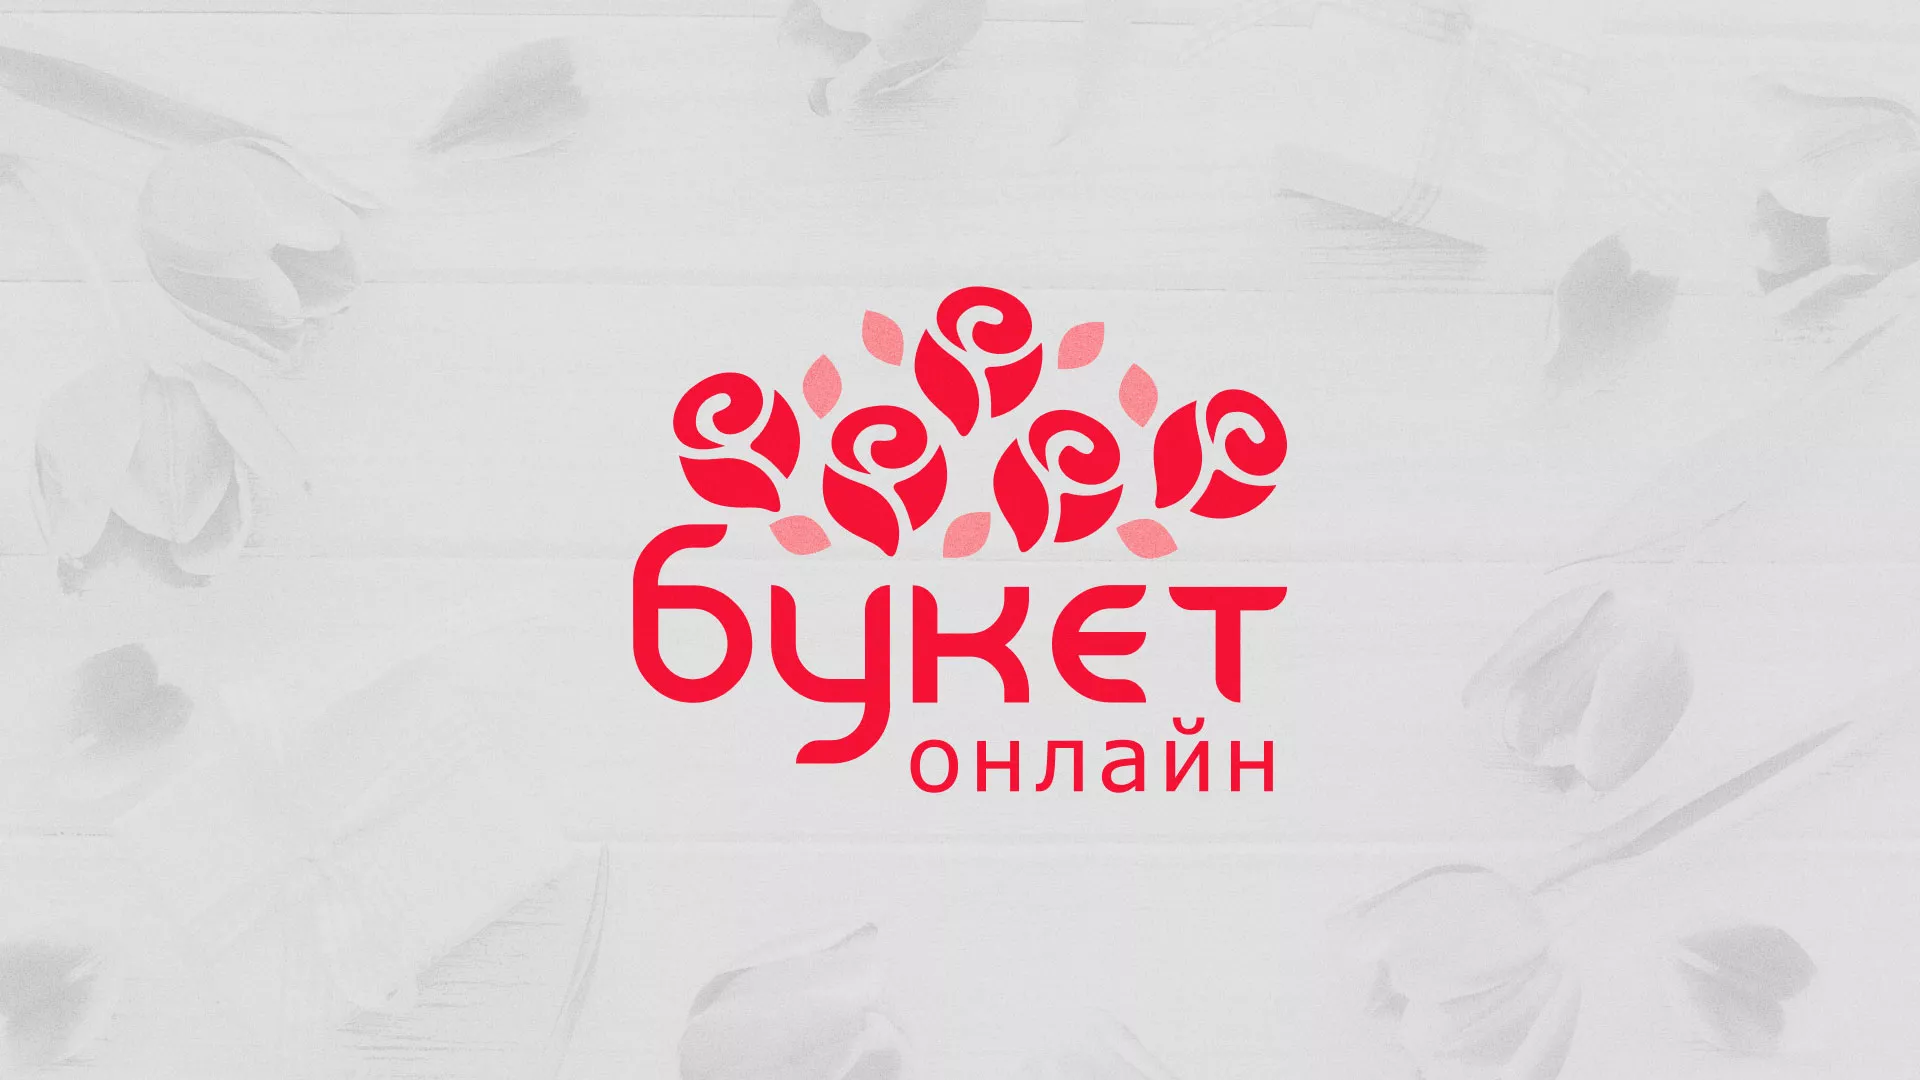 Создание интернет-магазина «Букет-онлайн» по цветам в Санкт-Петербурге